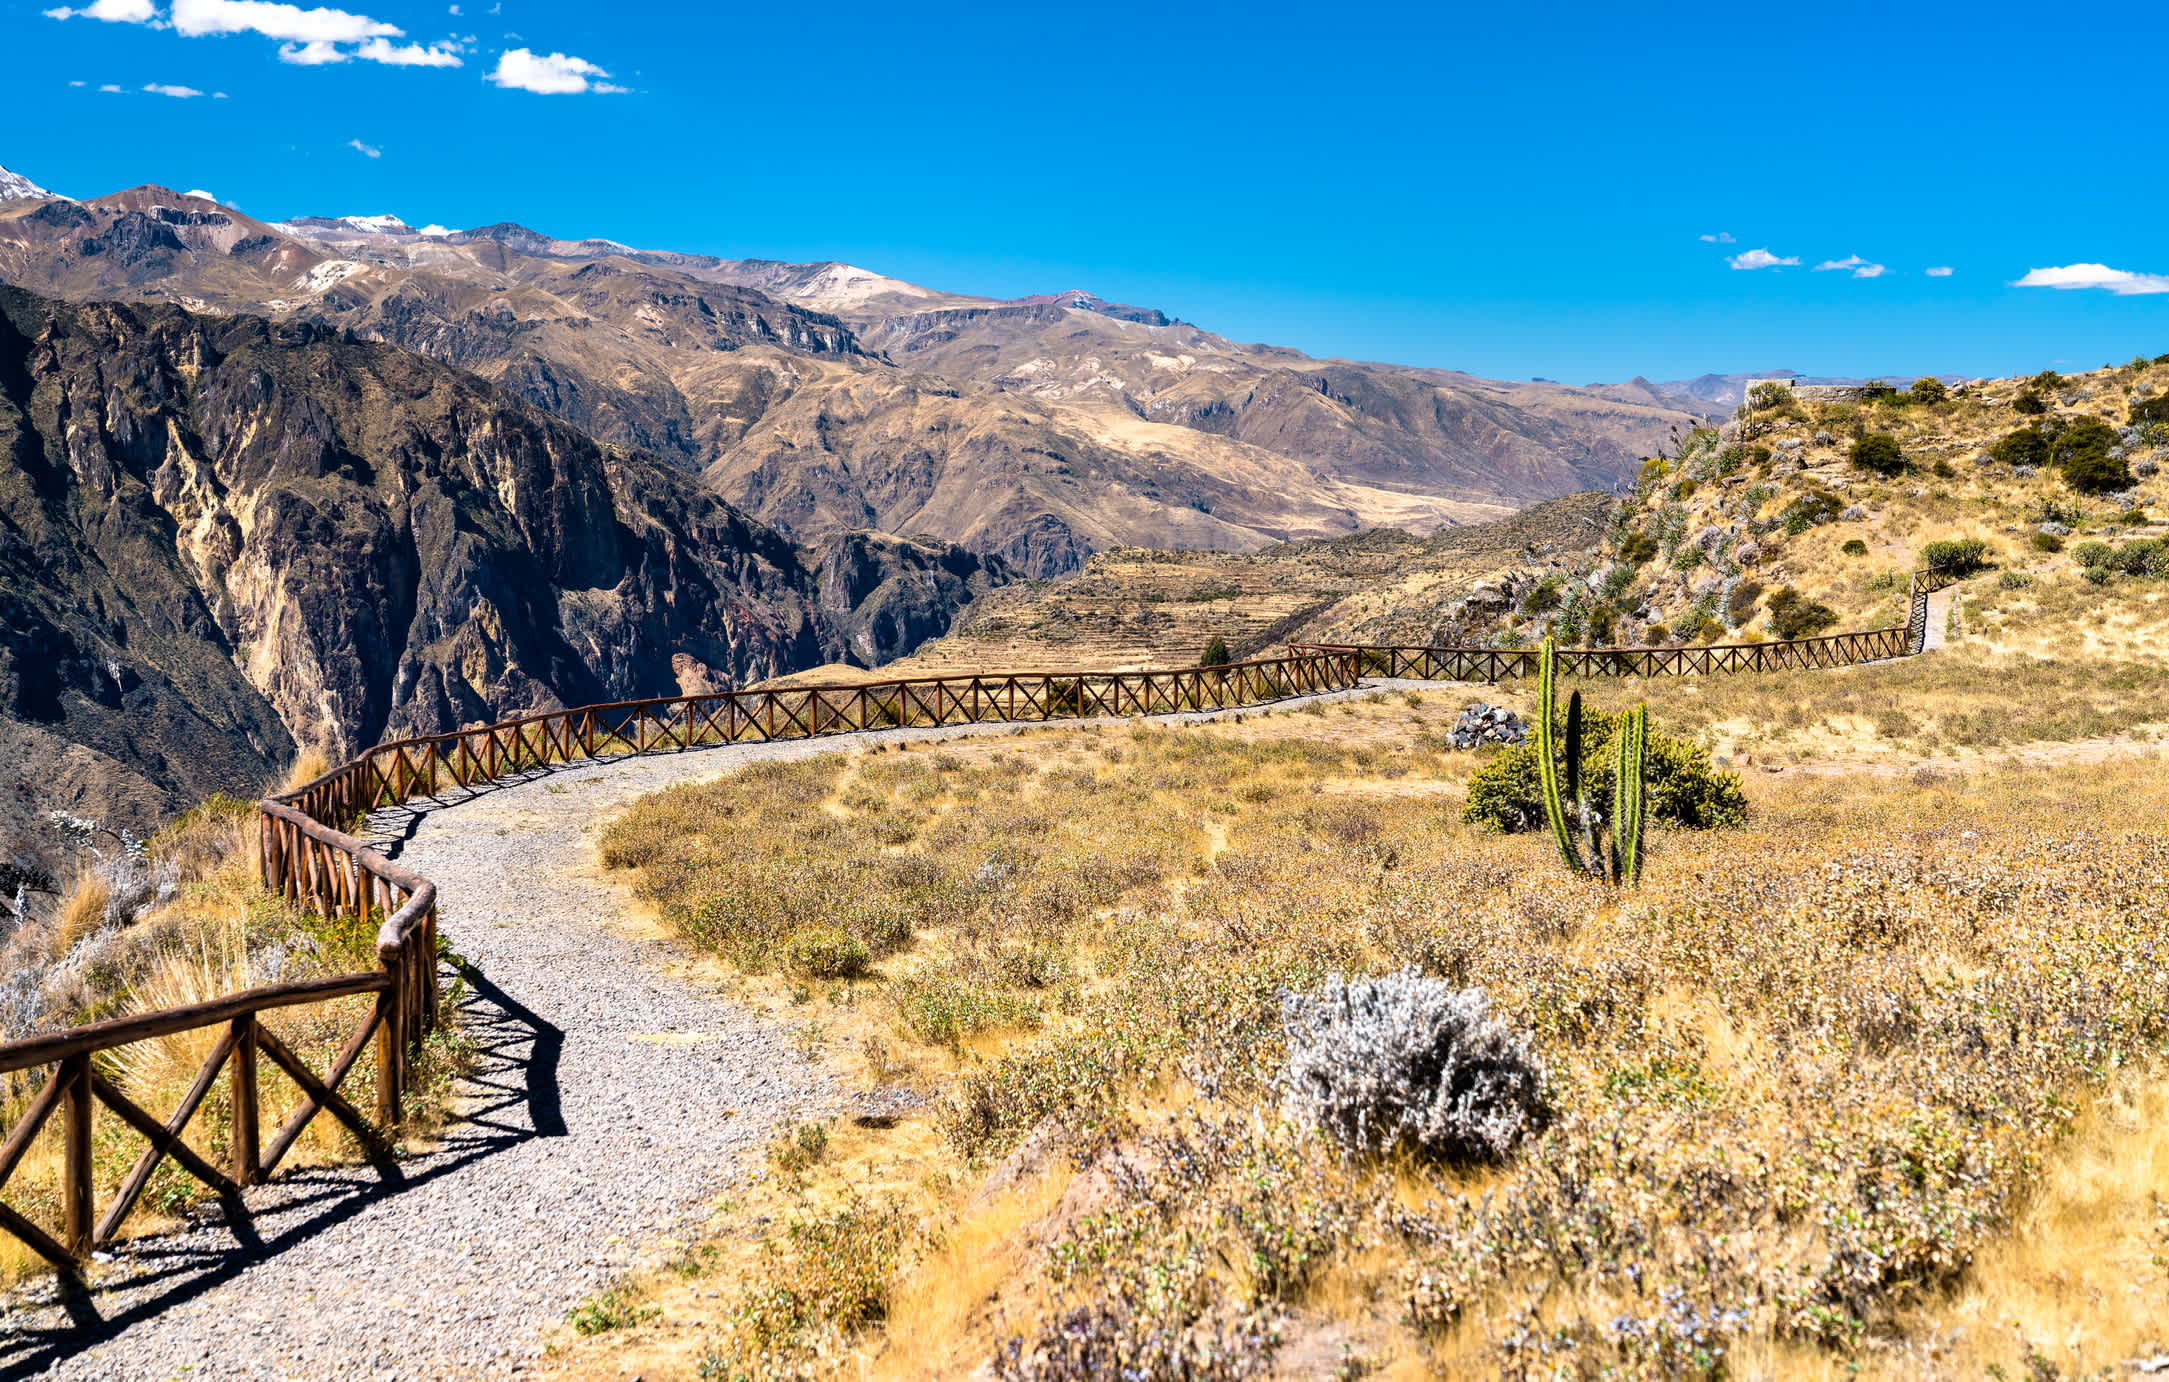 Sentier de randonnée dans la nature aride du canyon de Colca au Pérou